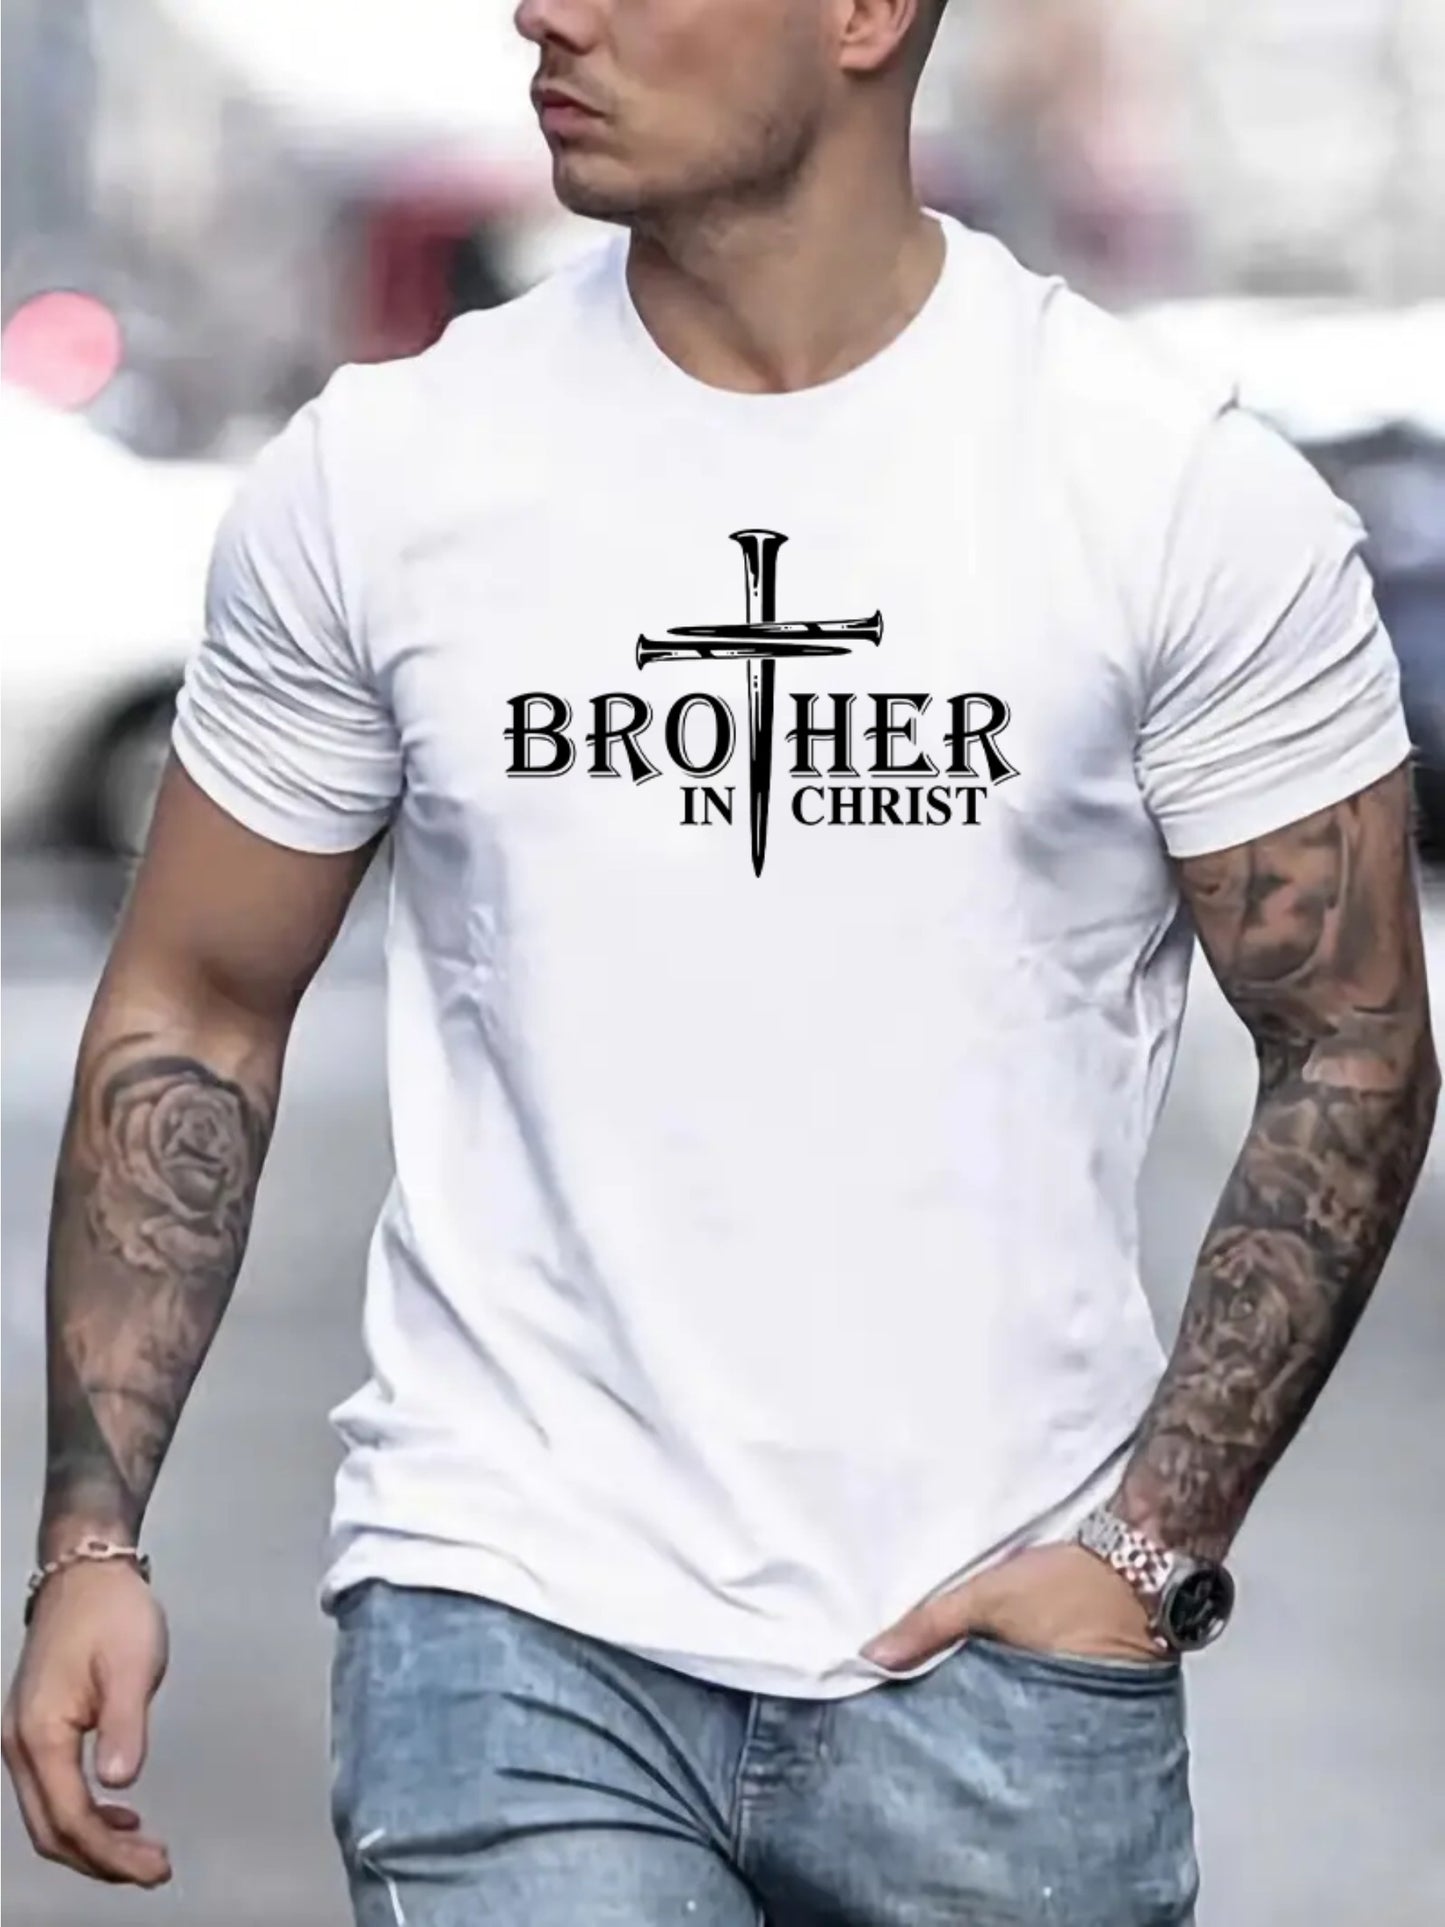 Brother In Christ Men's Christian T-shirt claimedbygoddesigns